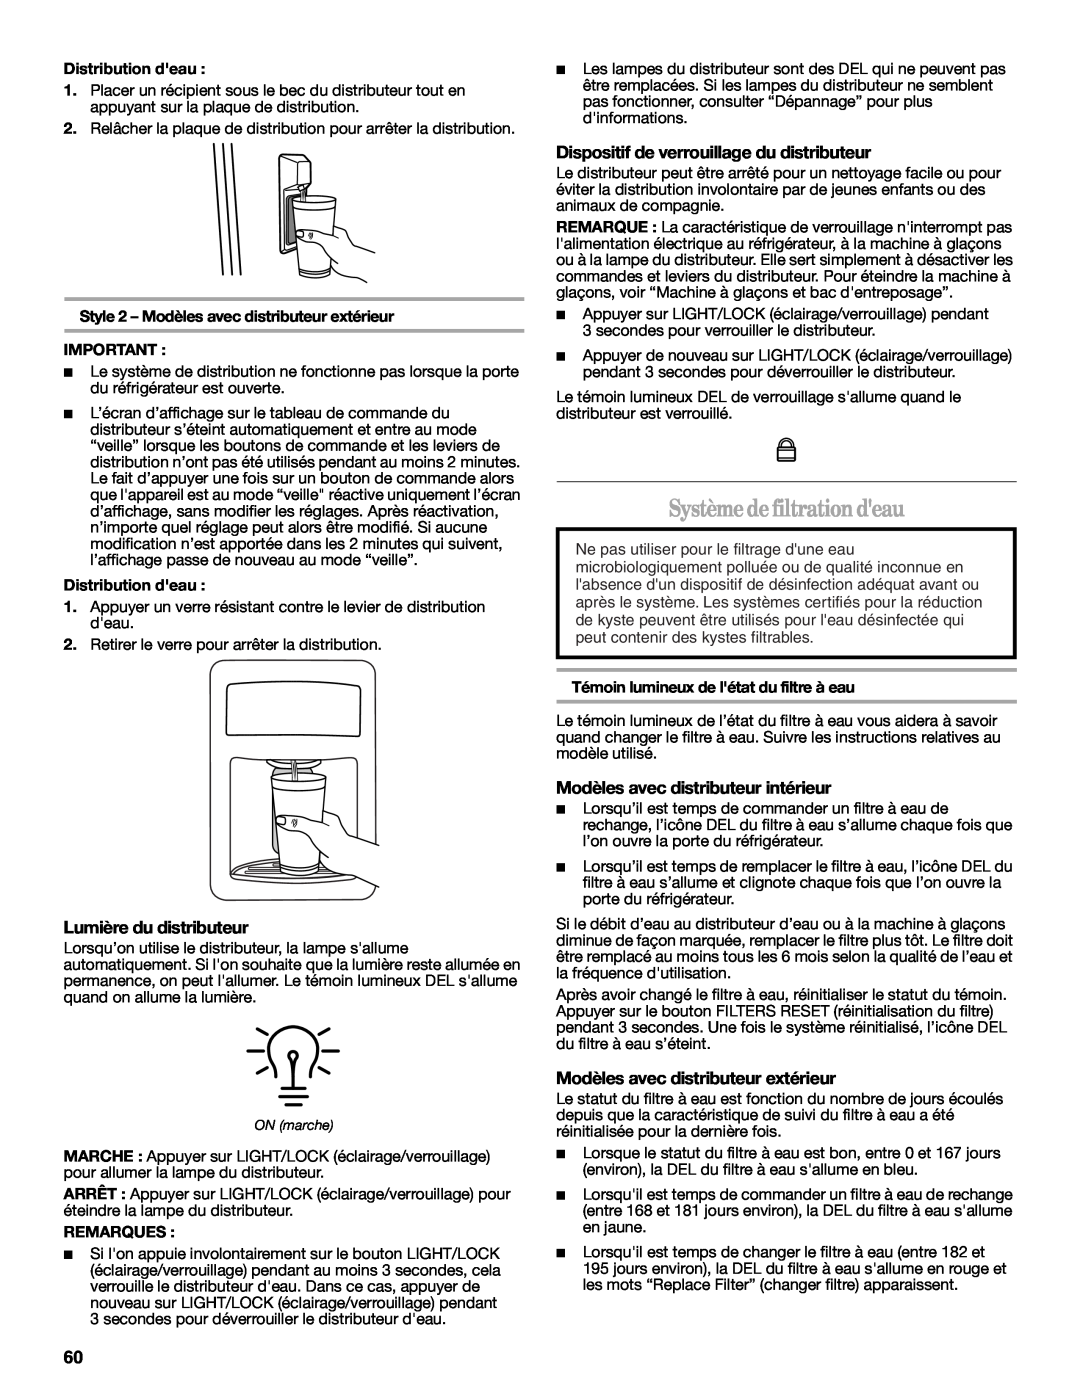 Whirlpool W10359303A Système de filtration deau, Lumière du distributeur, Dispositif de verrouillage du distributeur 